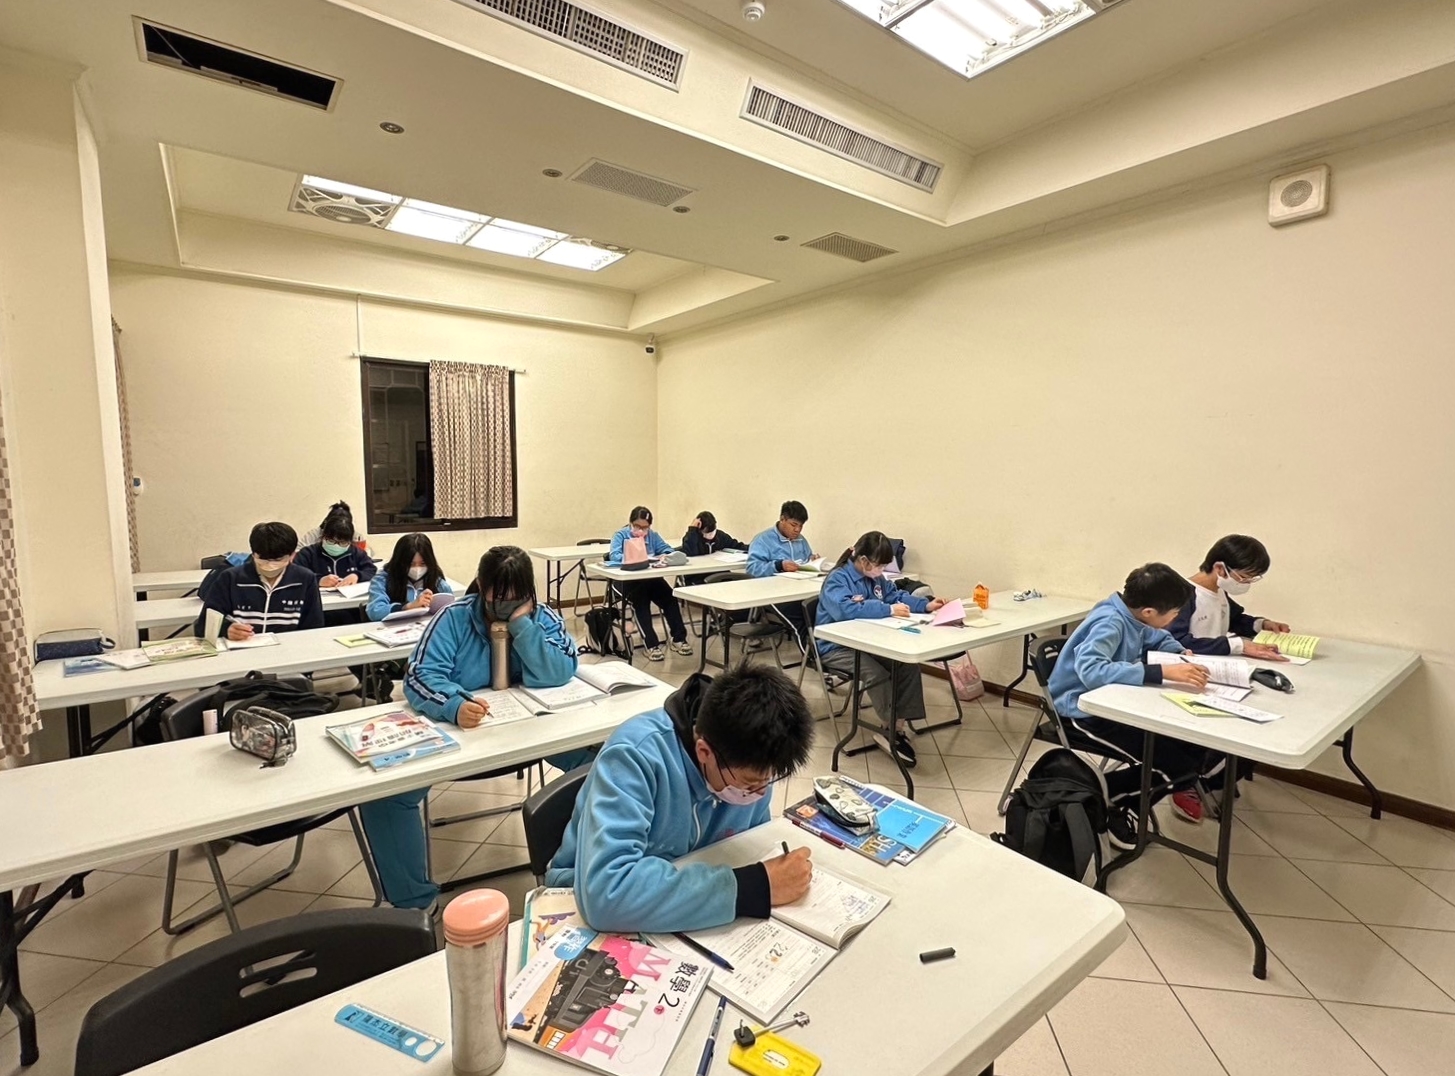 學生們在武聖學堂溫書自習.jpg